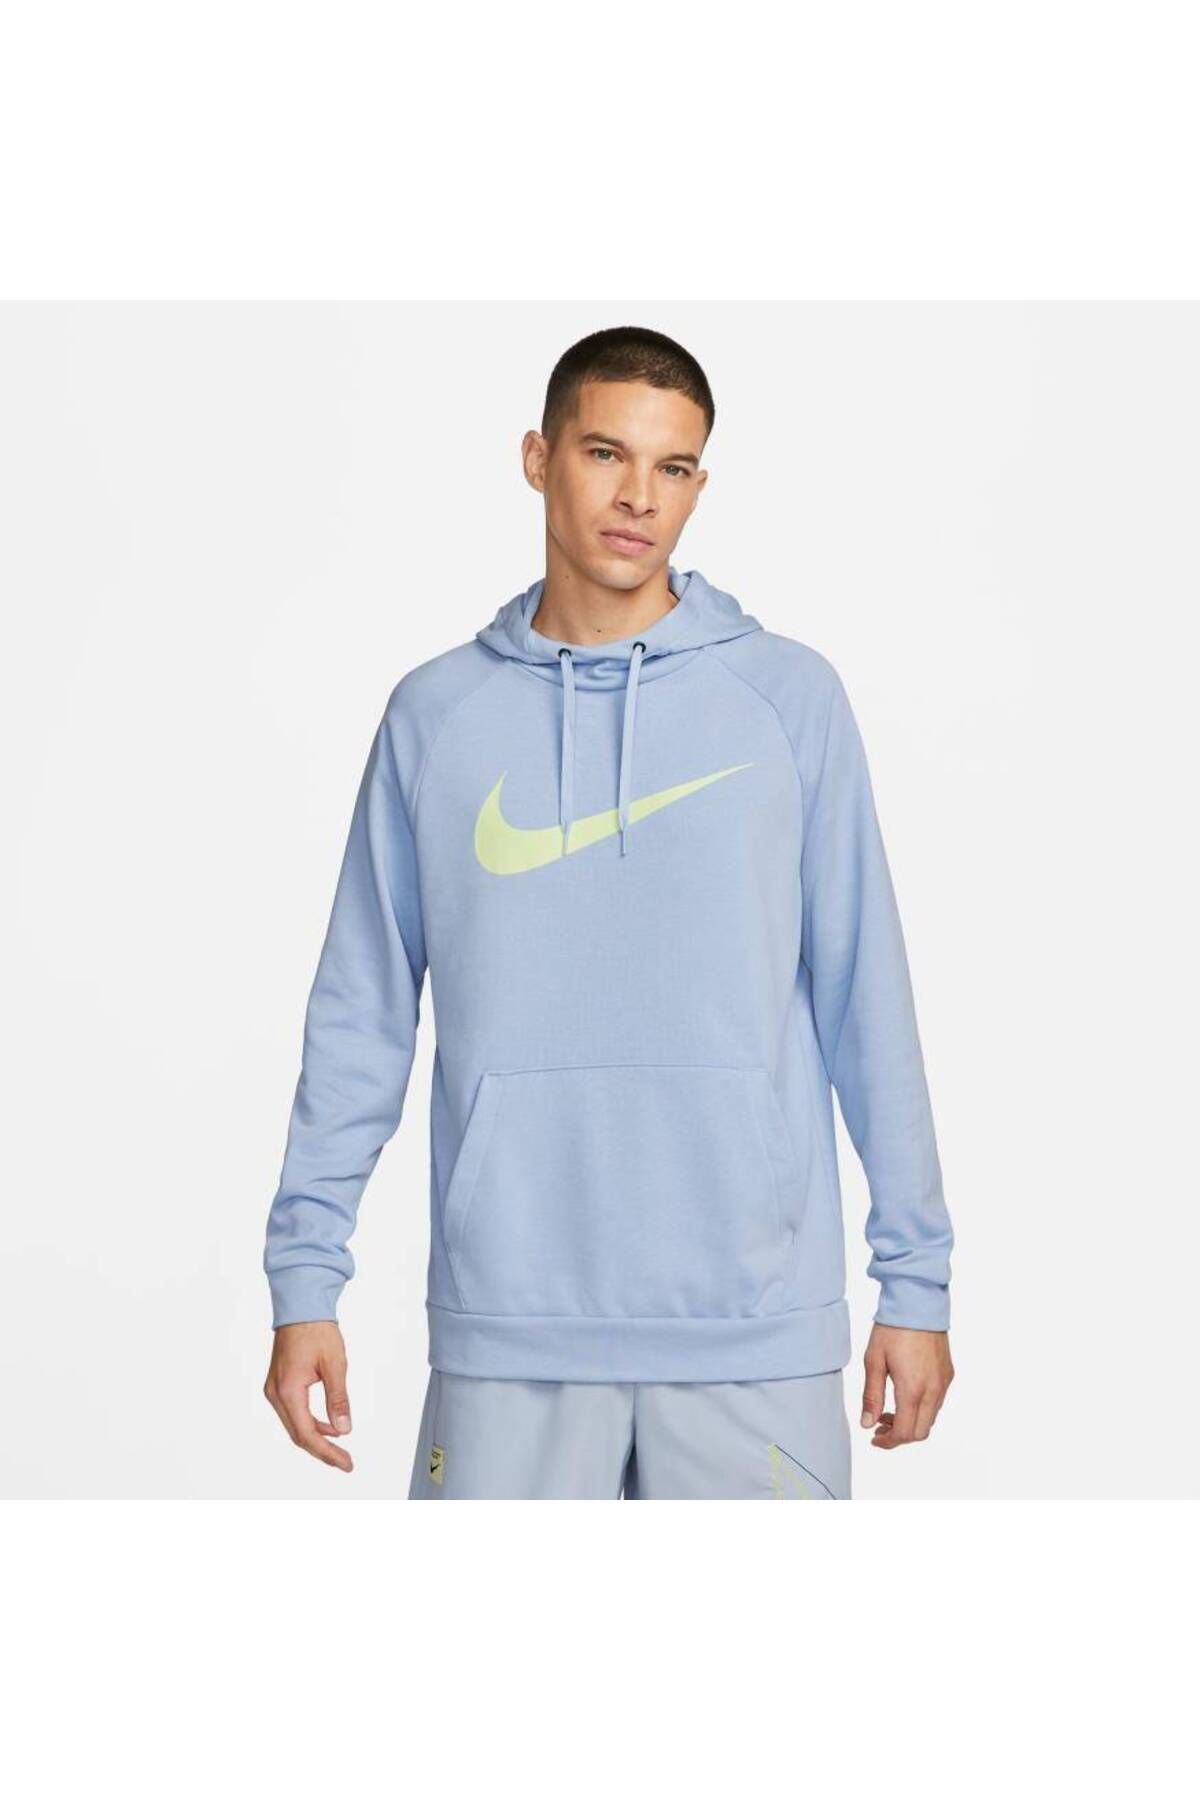 Nike Dr i Fit Hoodie Pullover Erkek Sweatshirt CZ2425-479